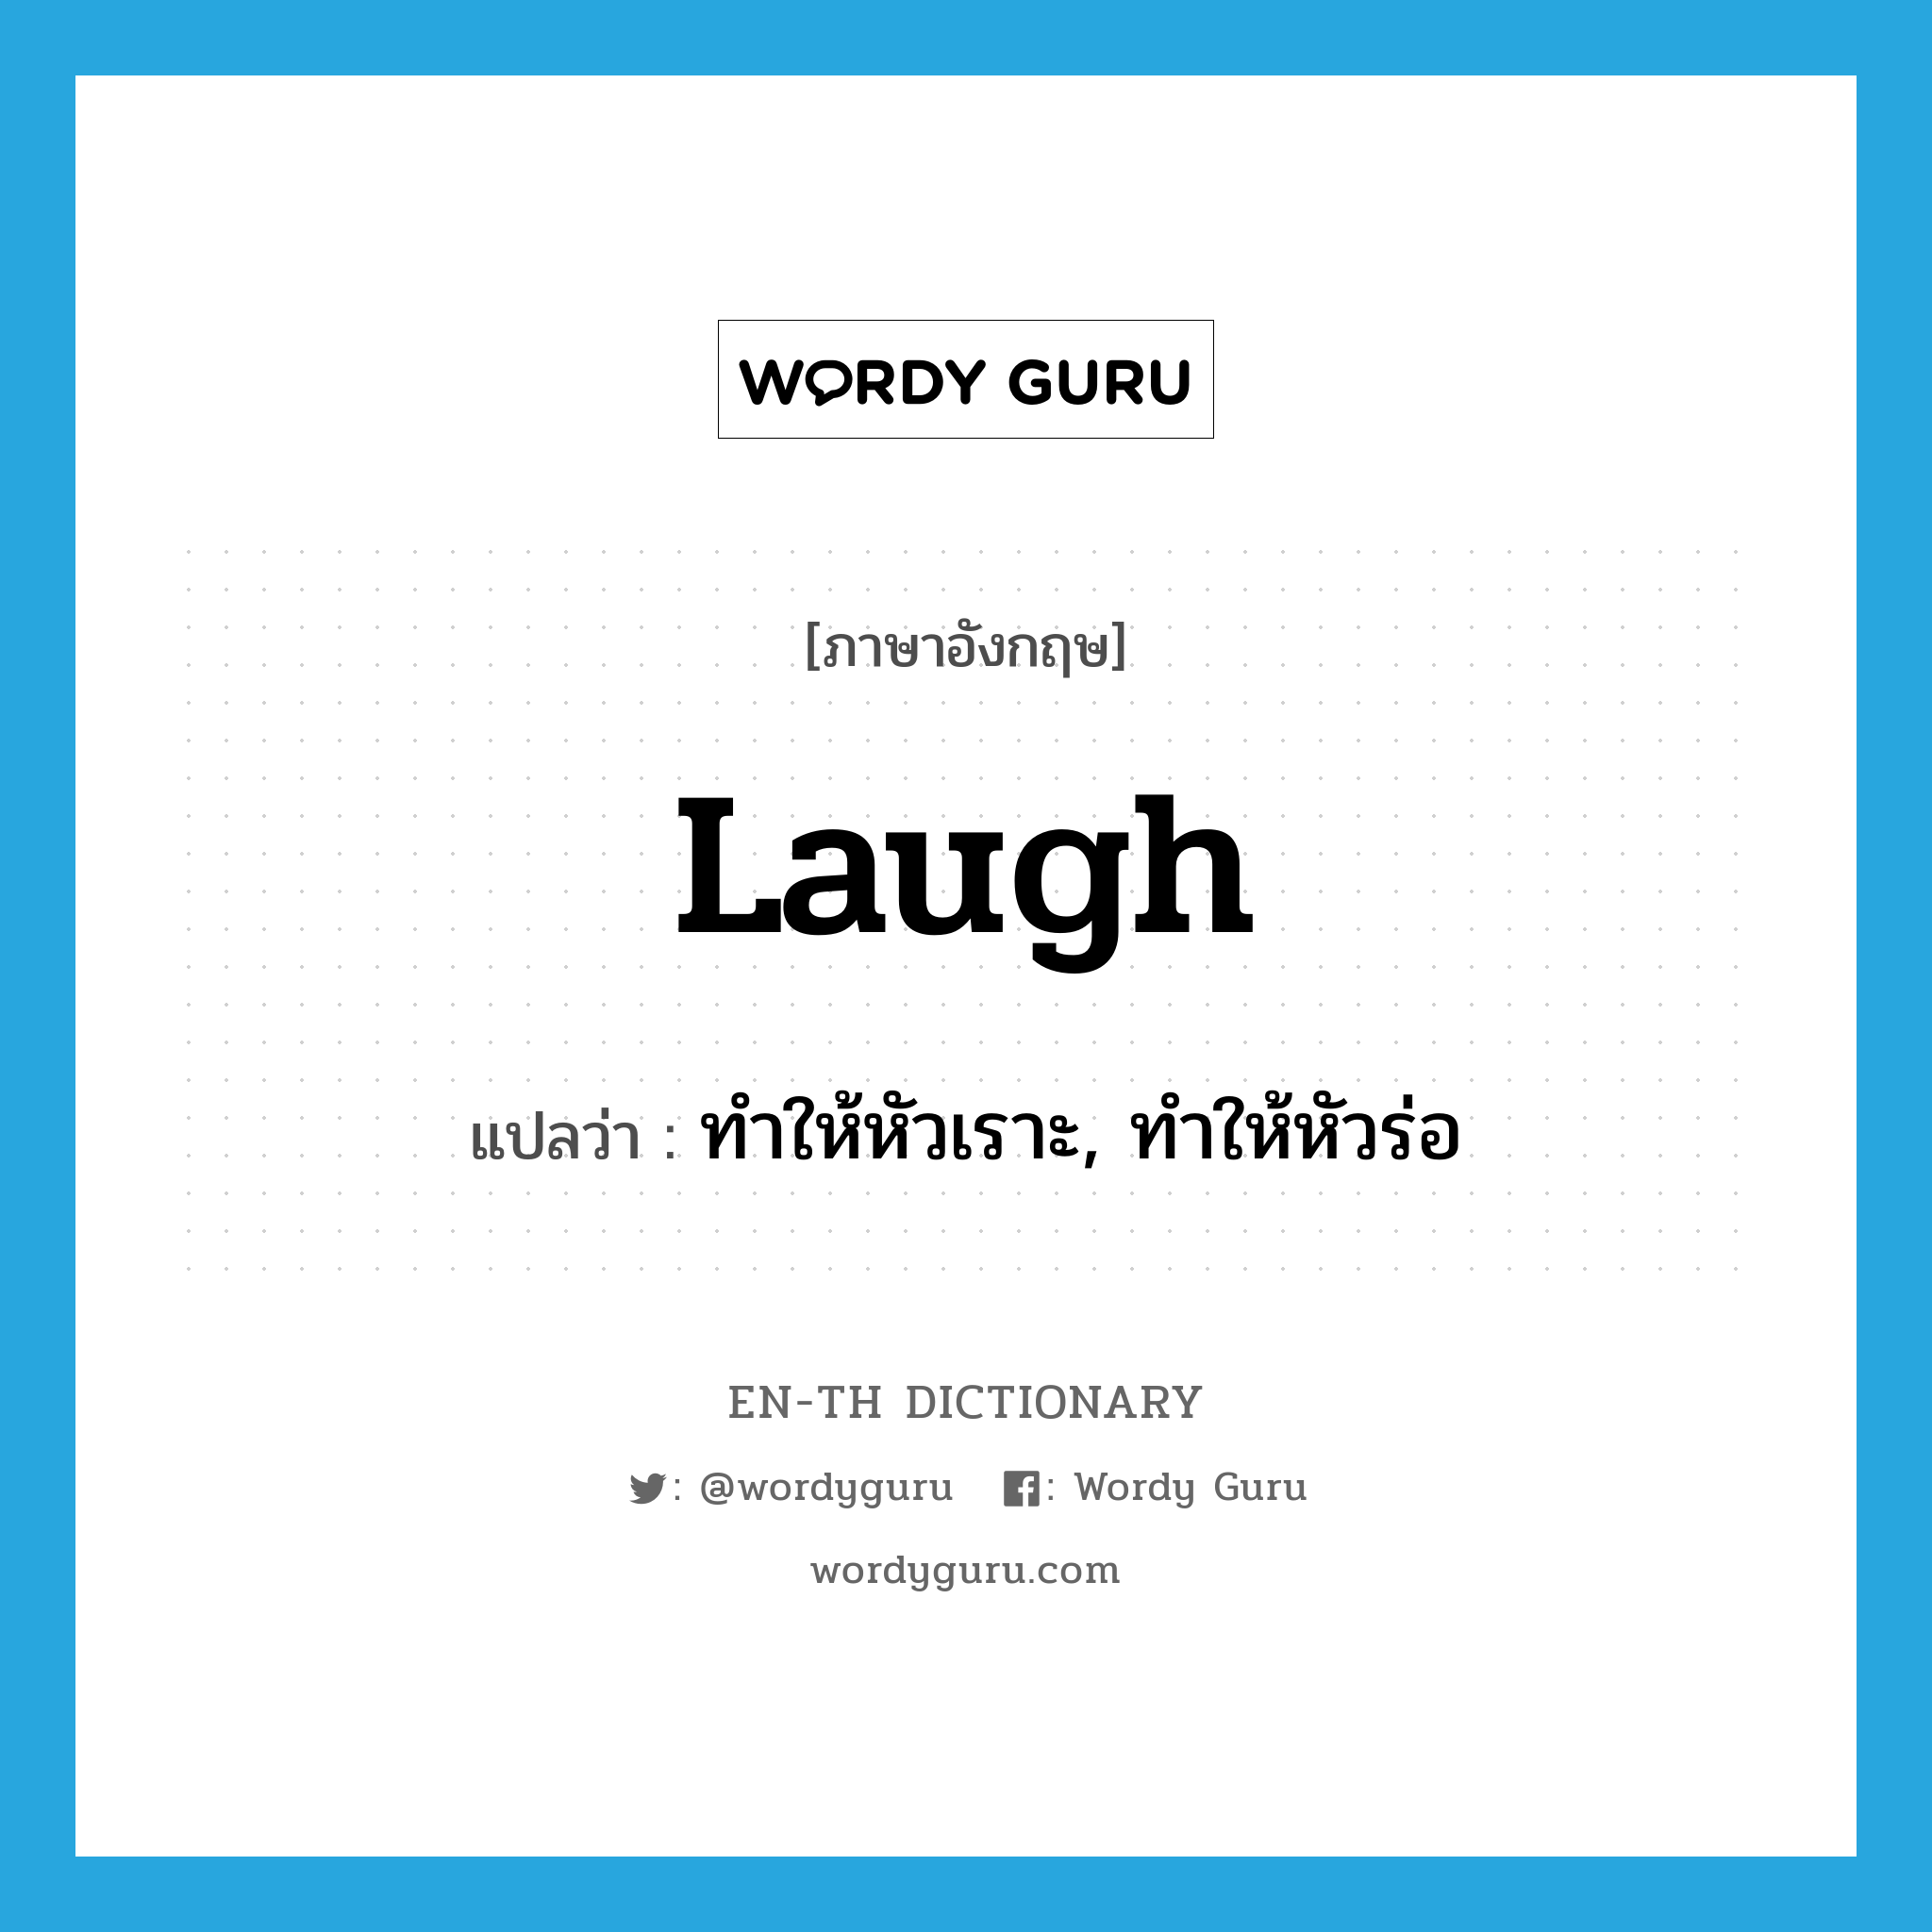 ทำให้หัวเราะ, ทำให้หัวร่อ ภาษาอังกฤษ?, คำศัพท์ภาษาอังกฤษ ทำให้หัวเราะ, ทำให้หัวร่อ แปลว่า laugh ประเภท VT หมวด VT